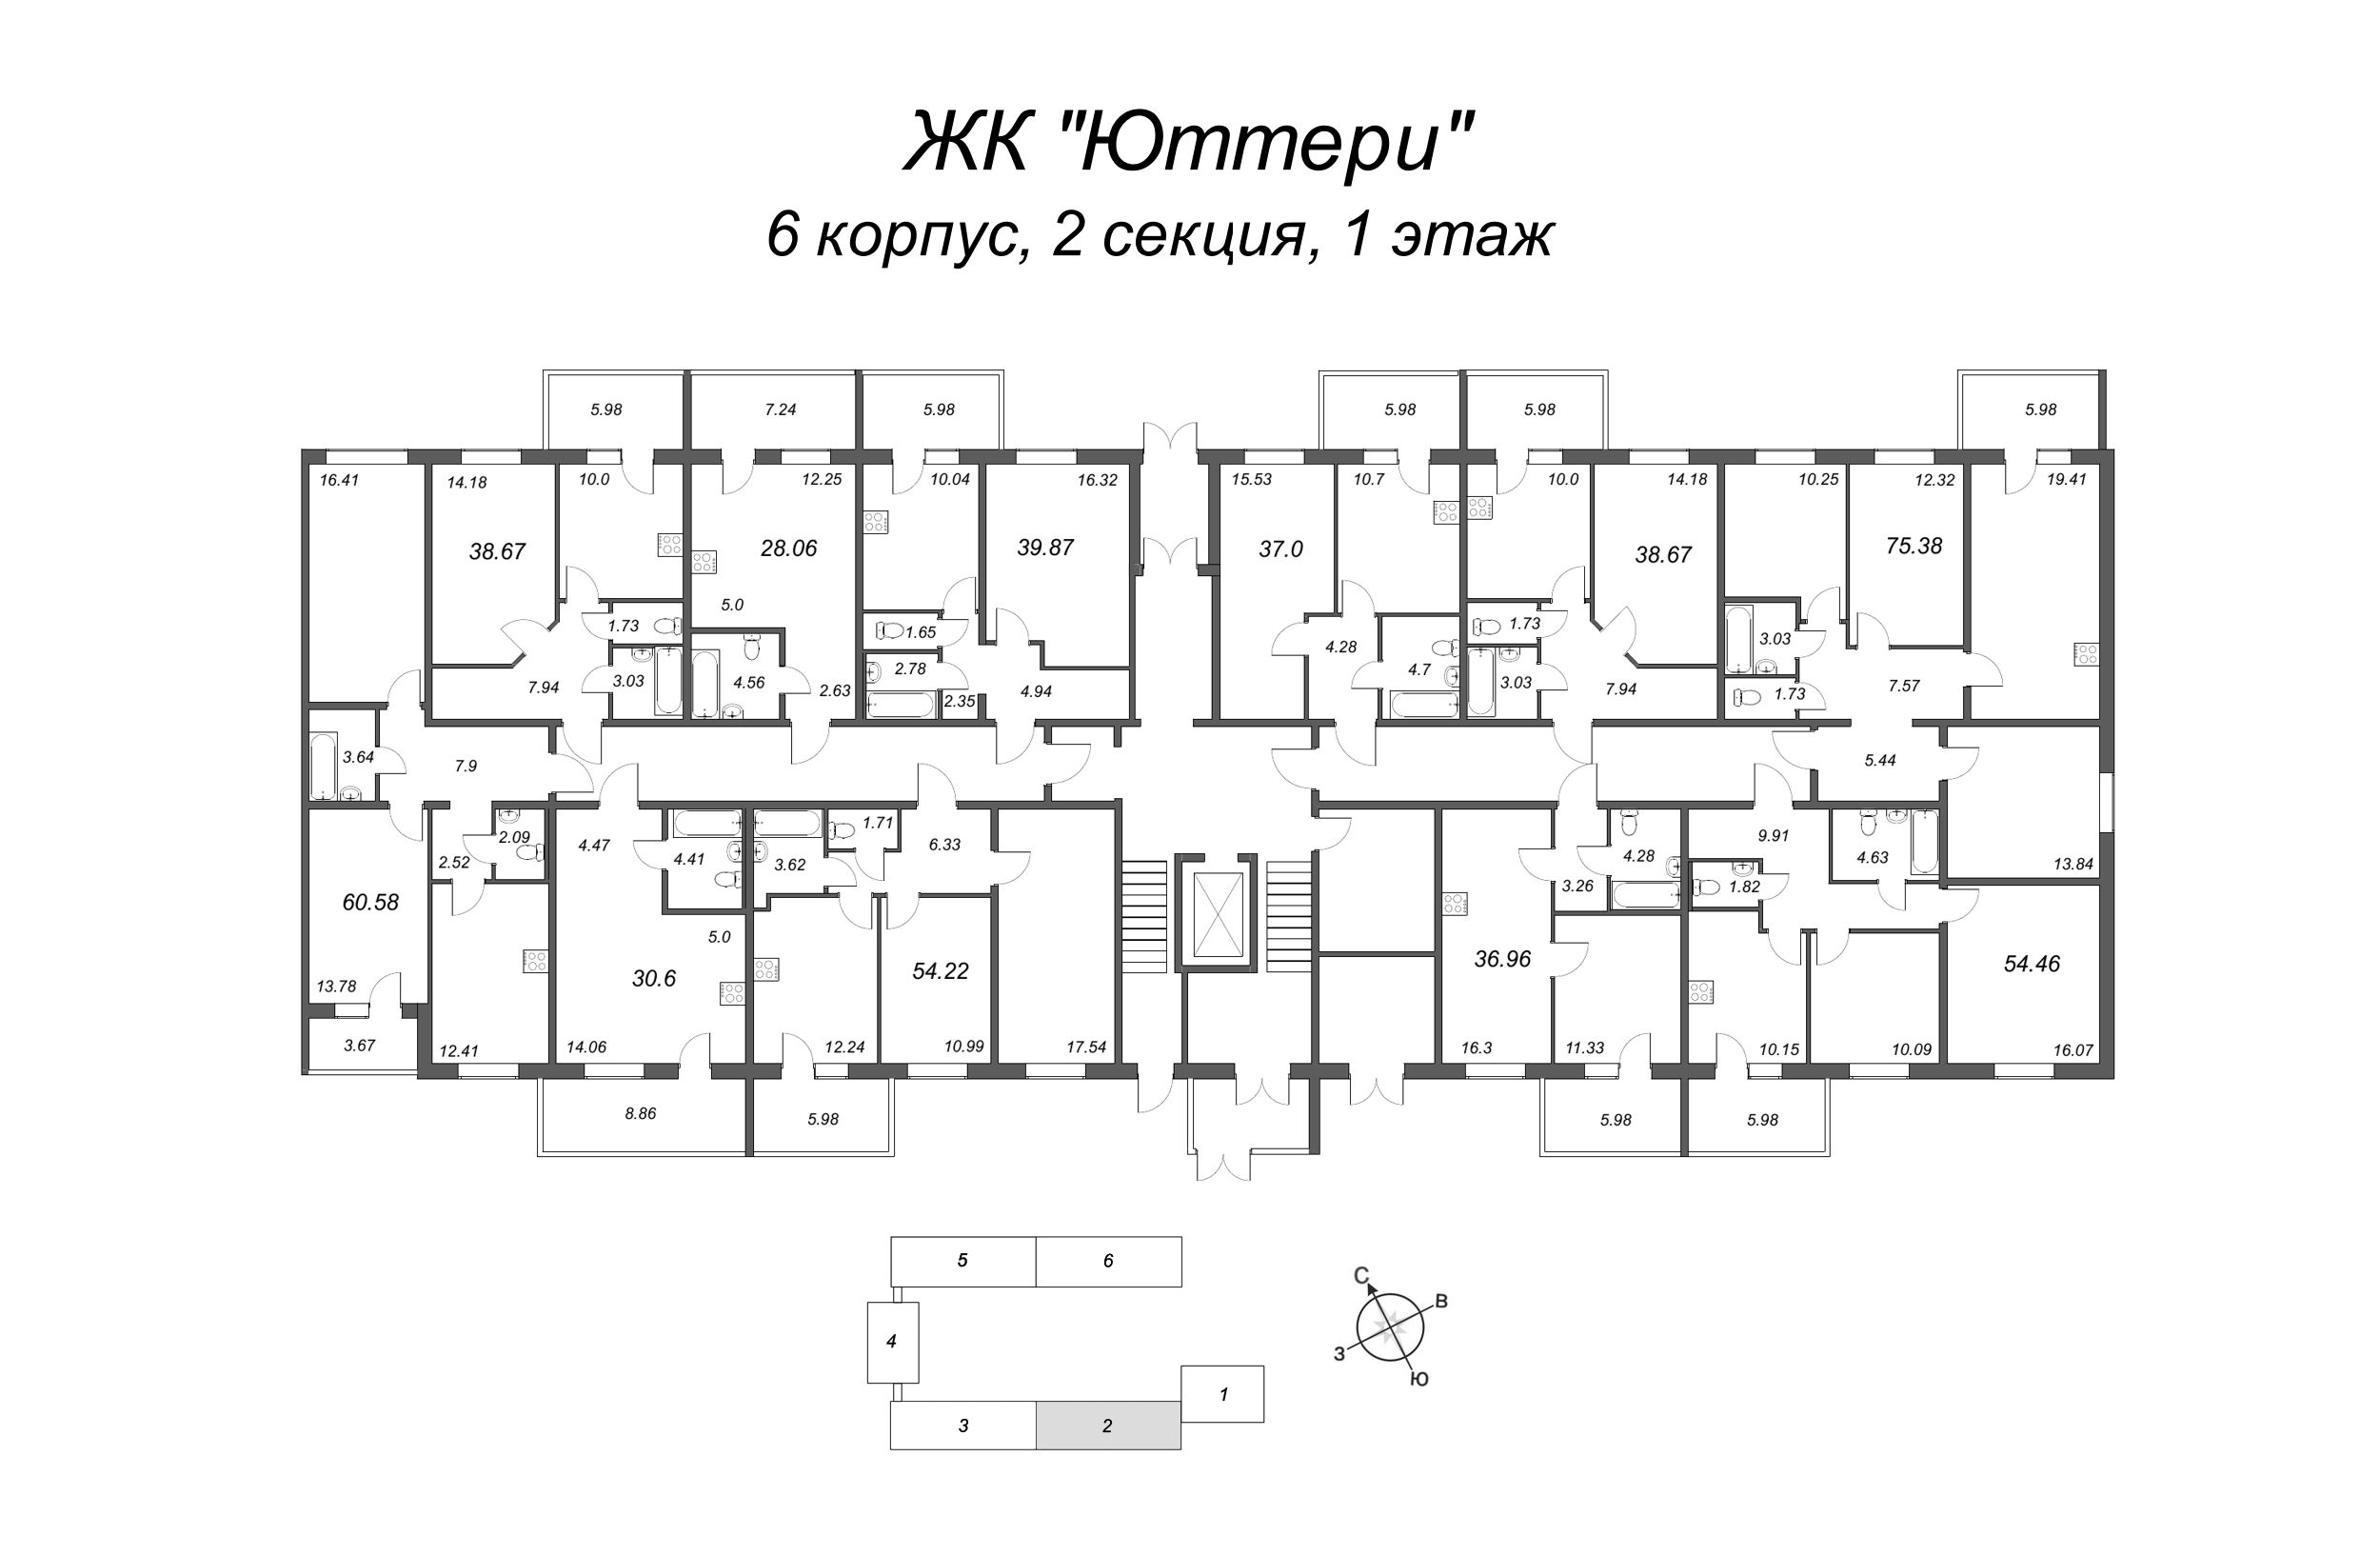 1-комнатная квартира, 38.08 м² в ЖК "Юттери" - планировка этажа